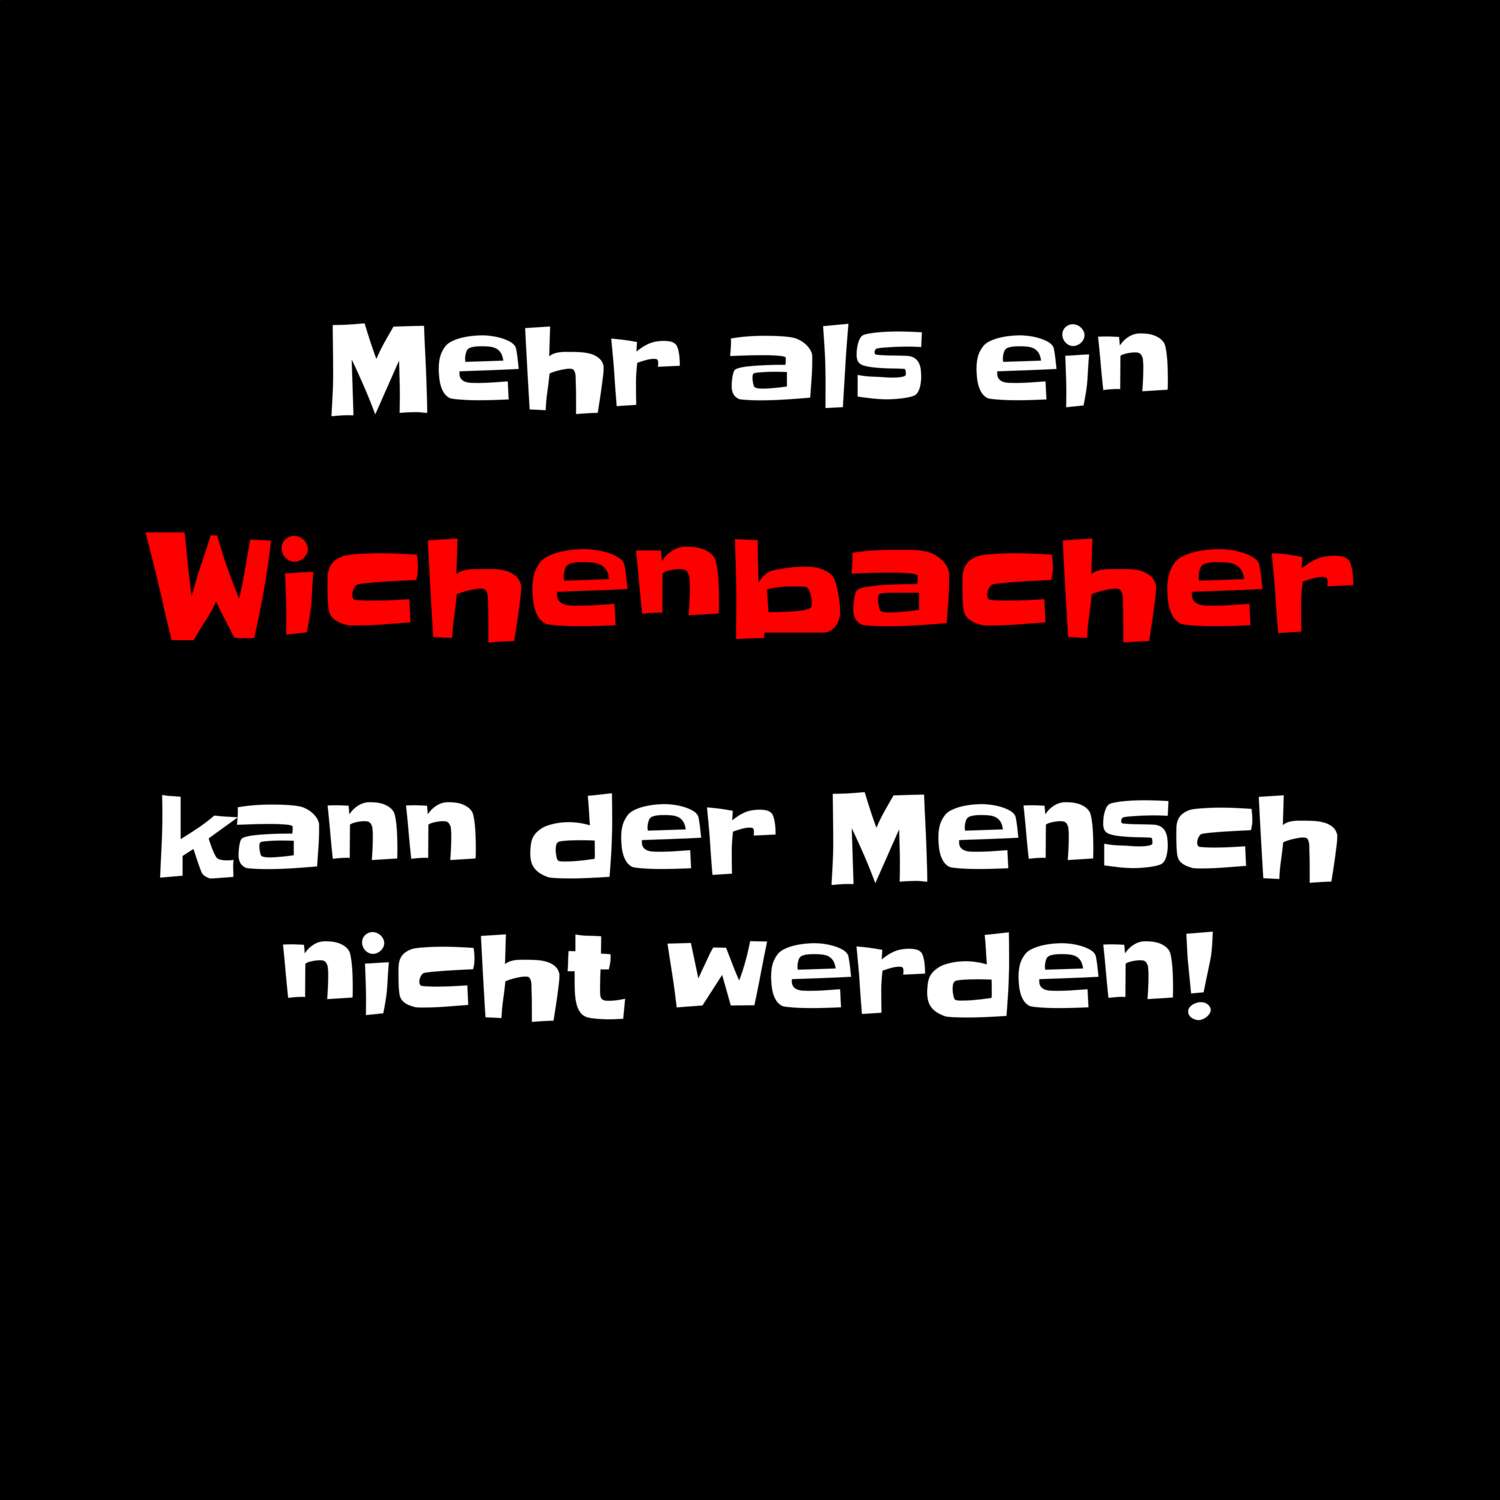 Wichenbach T-Shirt »Mehr als ein«